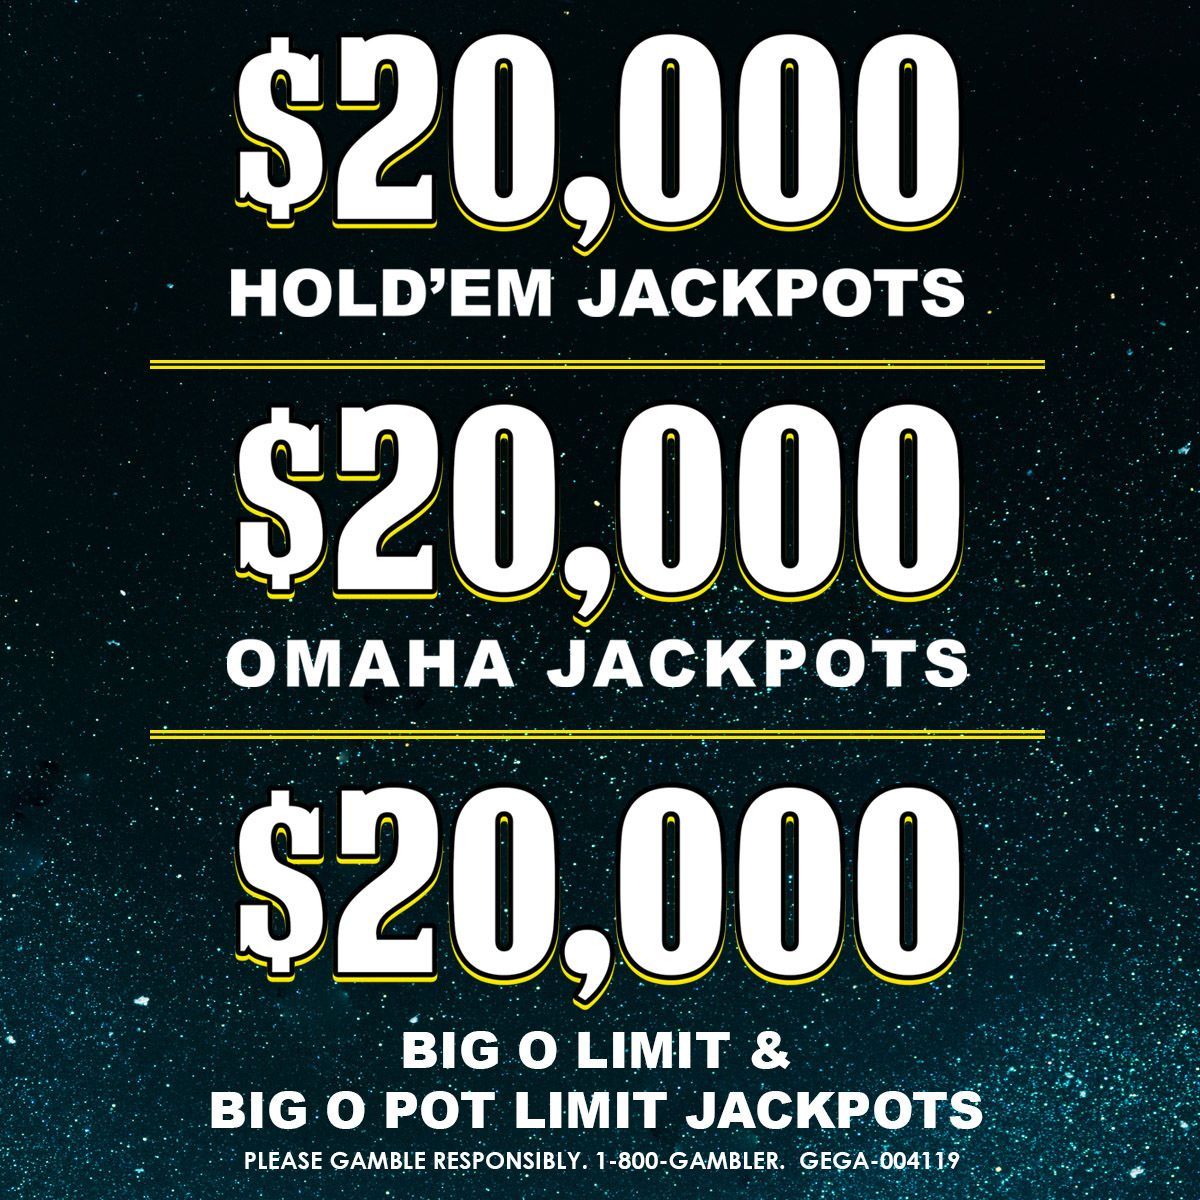 Poker Jackpots!! 20k Hold'em, omaha, and big o